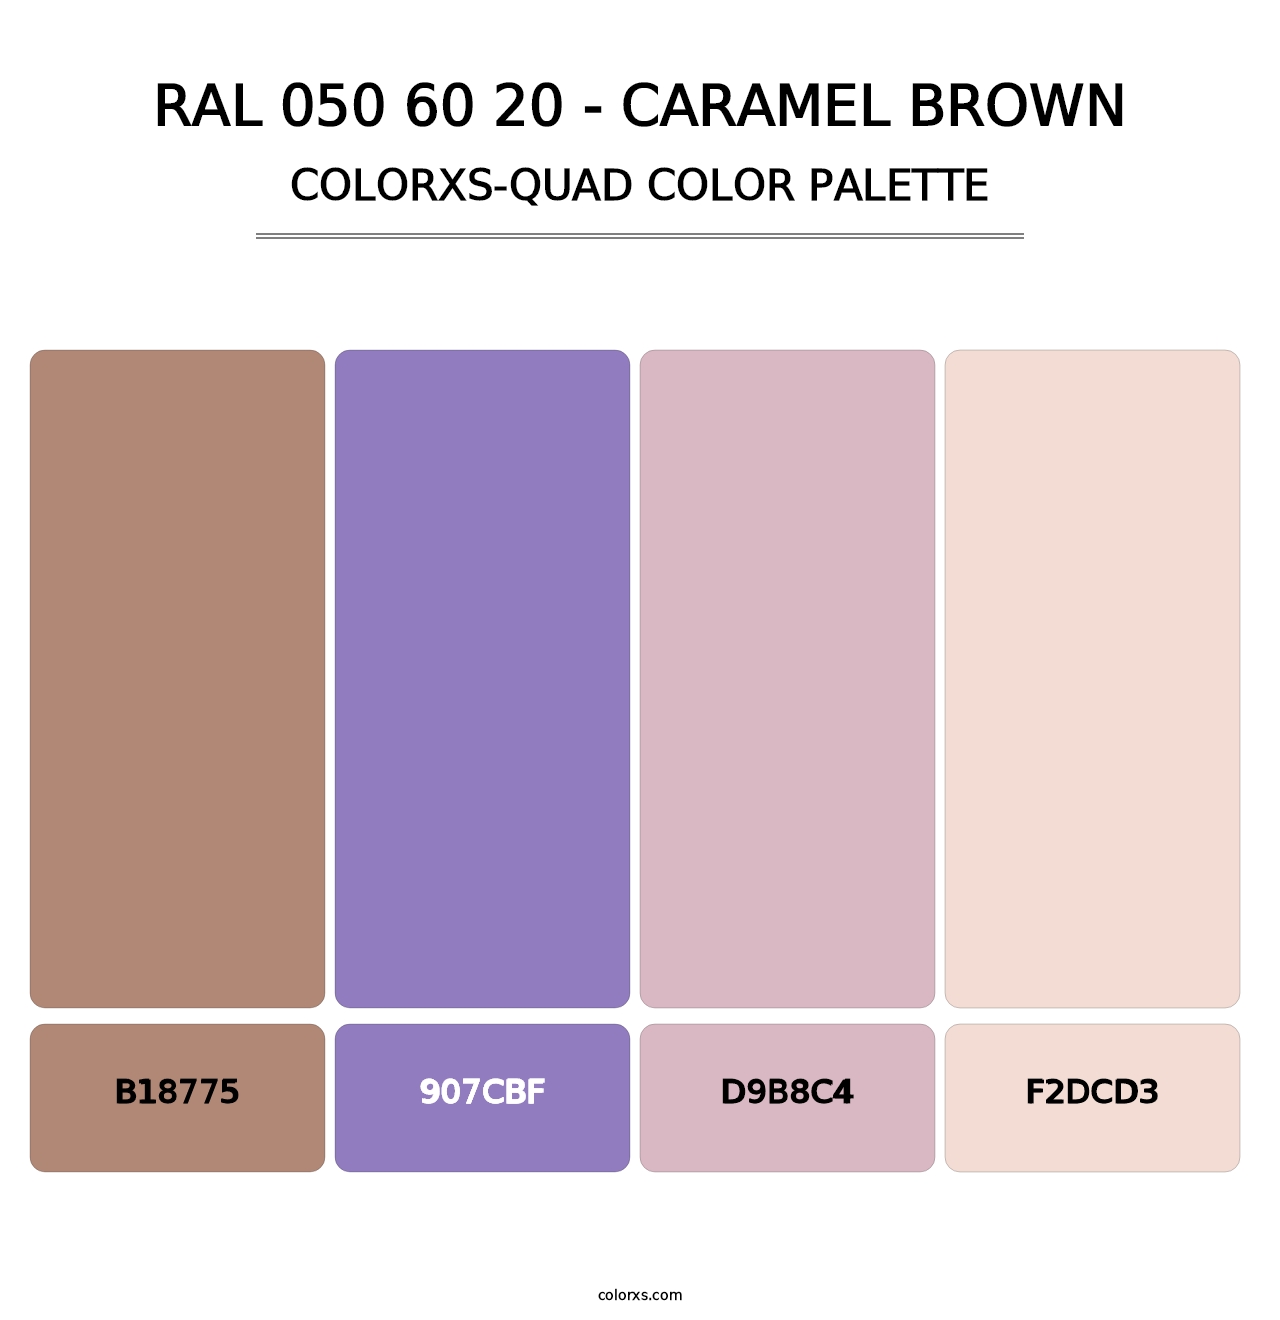 RAL 050 60 20 - Caramel Brown - Colorxs Quad Palette